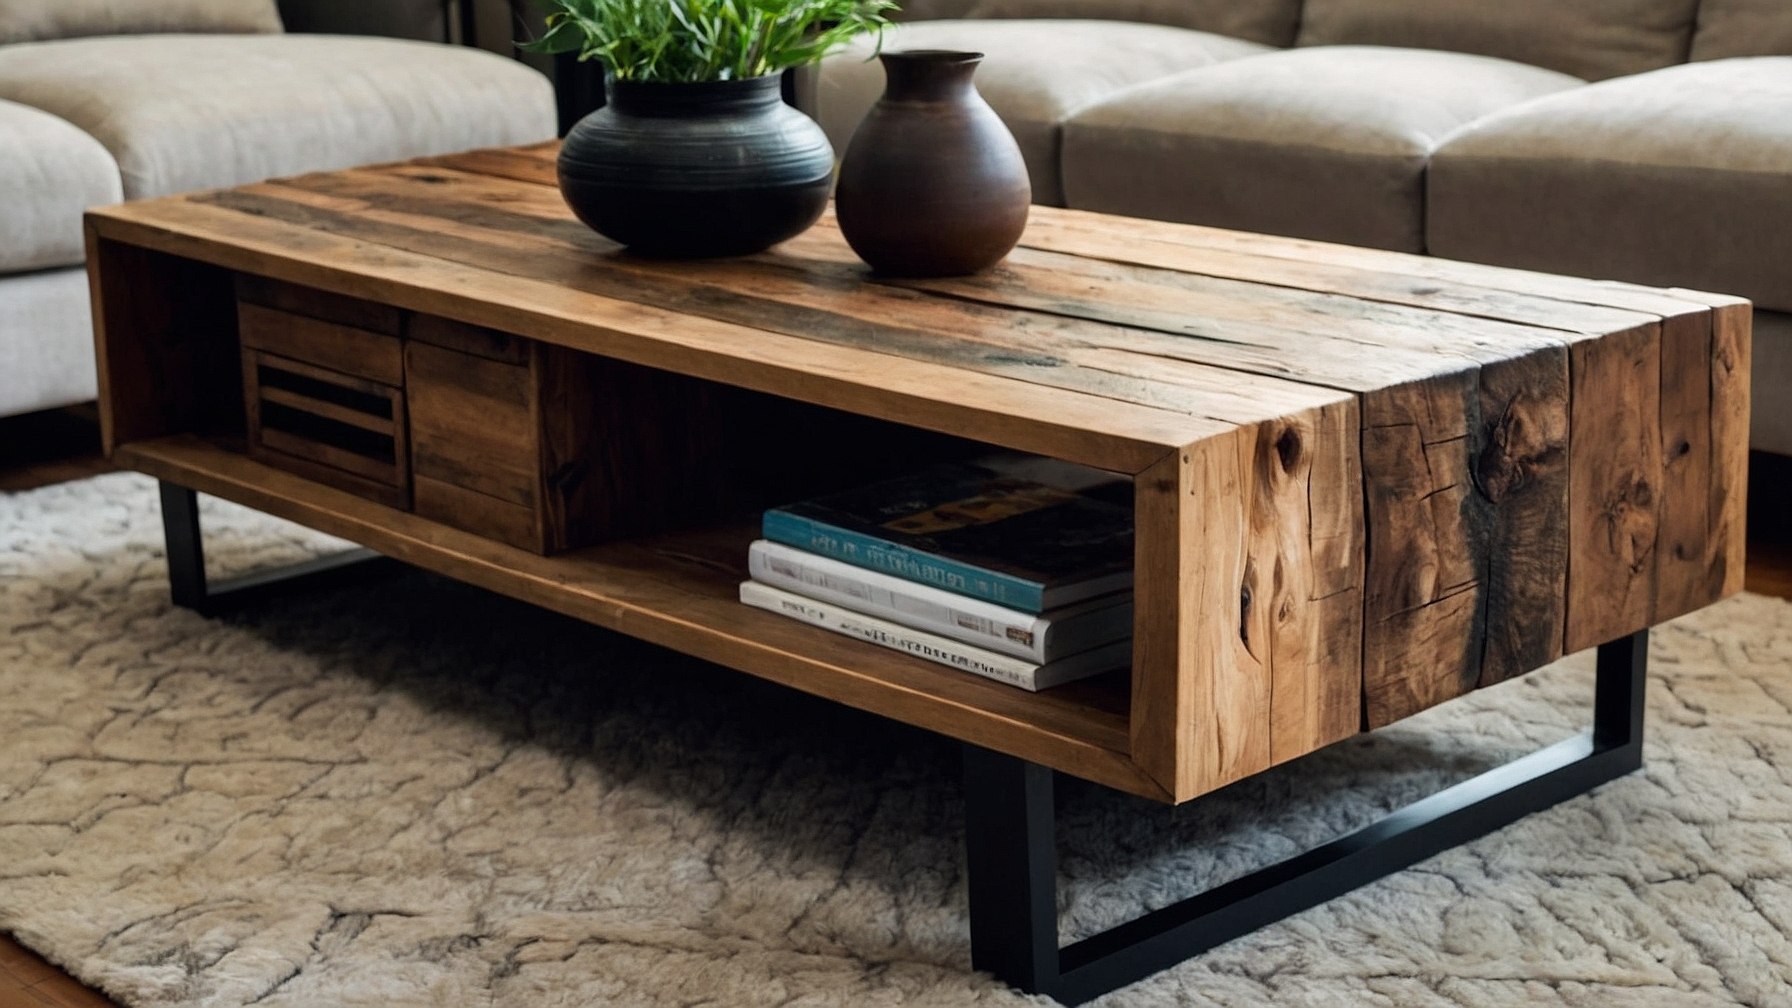 Default Minimalist house Wood Coffee Table Modern Style Timel 2 2